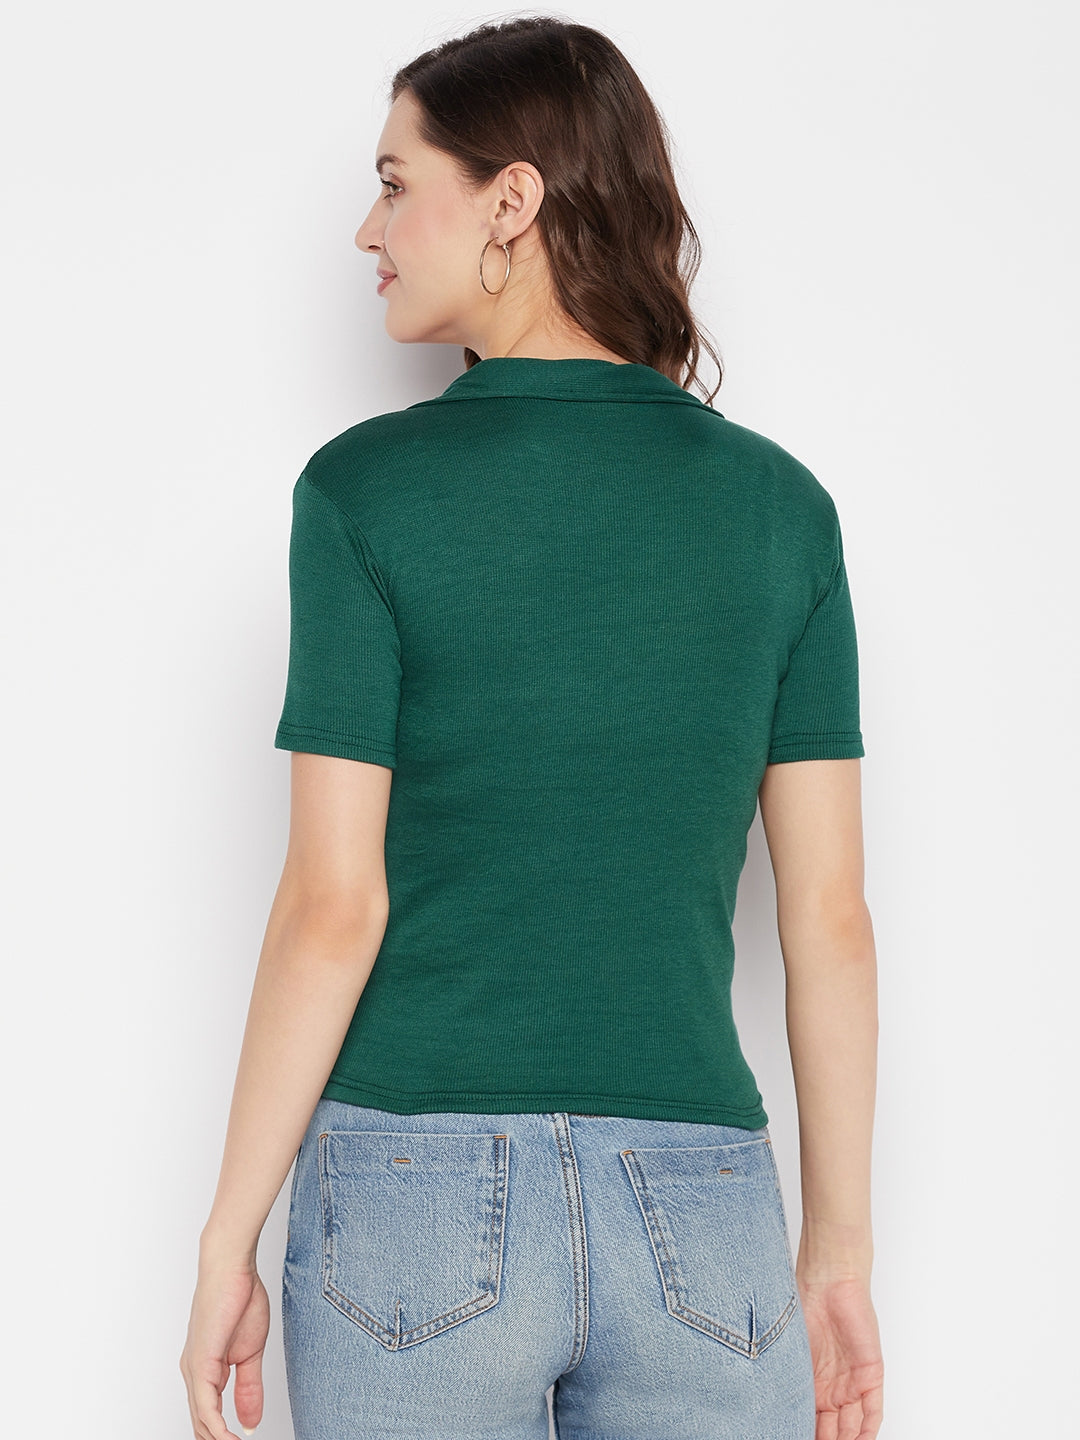 Clora Bottle Green Solid Shirt Collar Crop Top